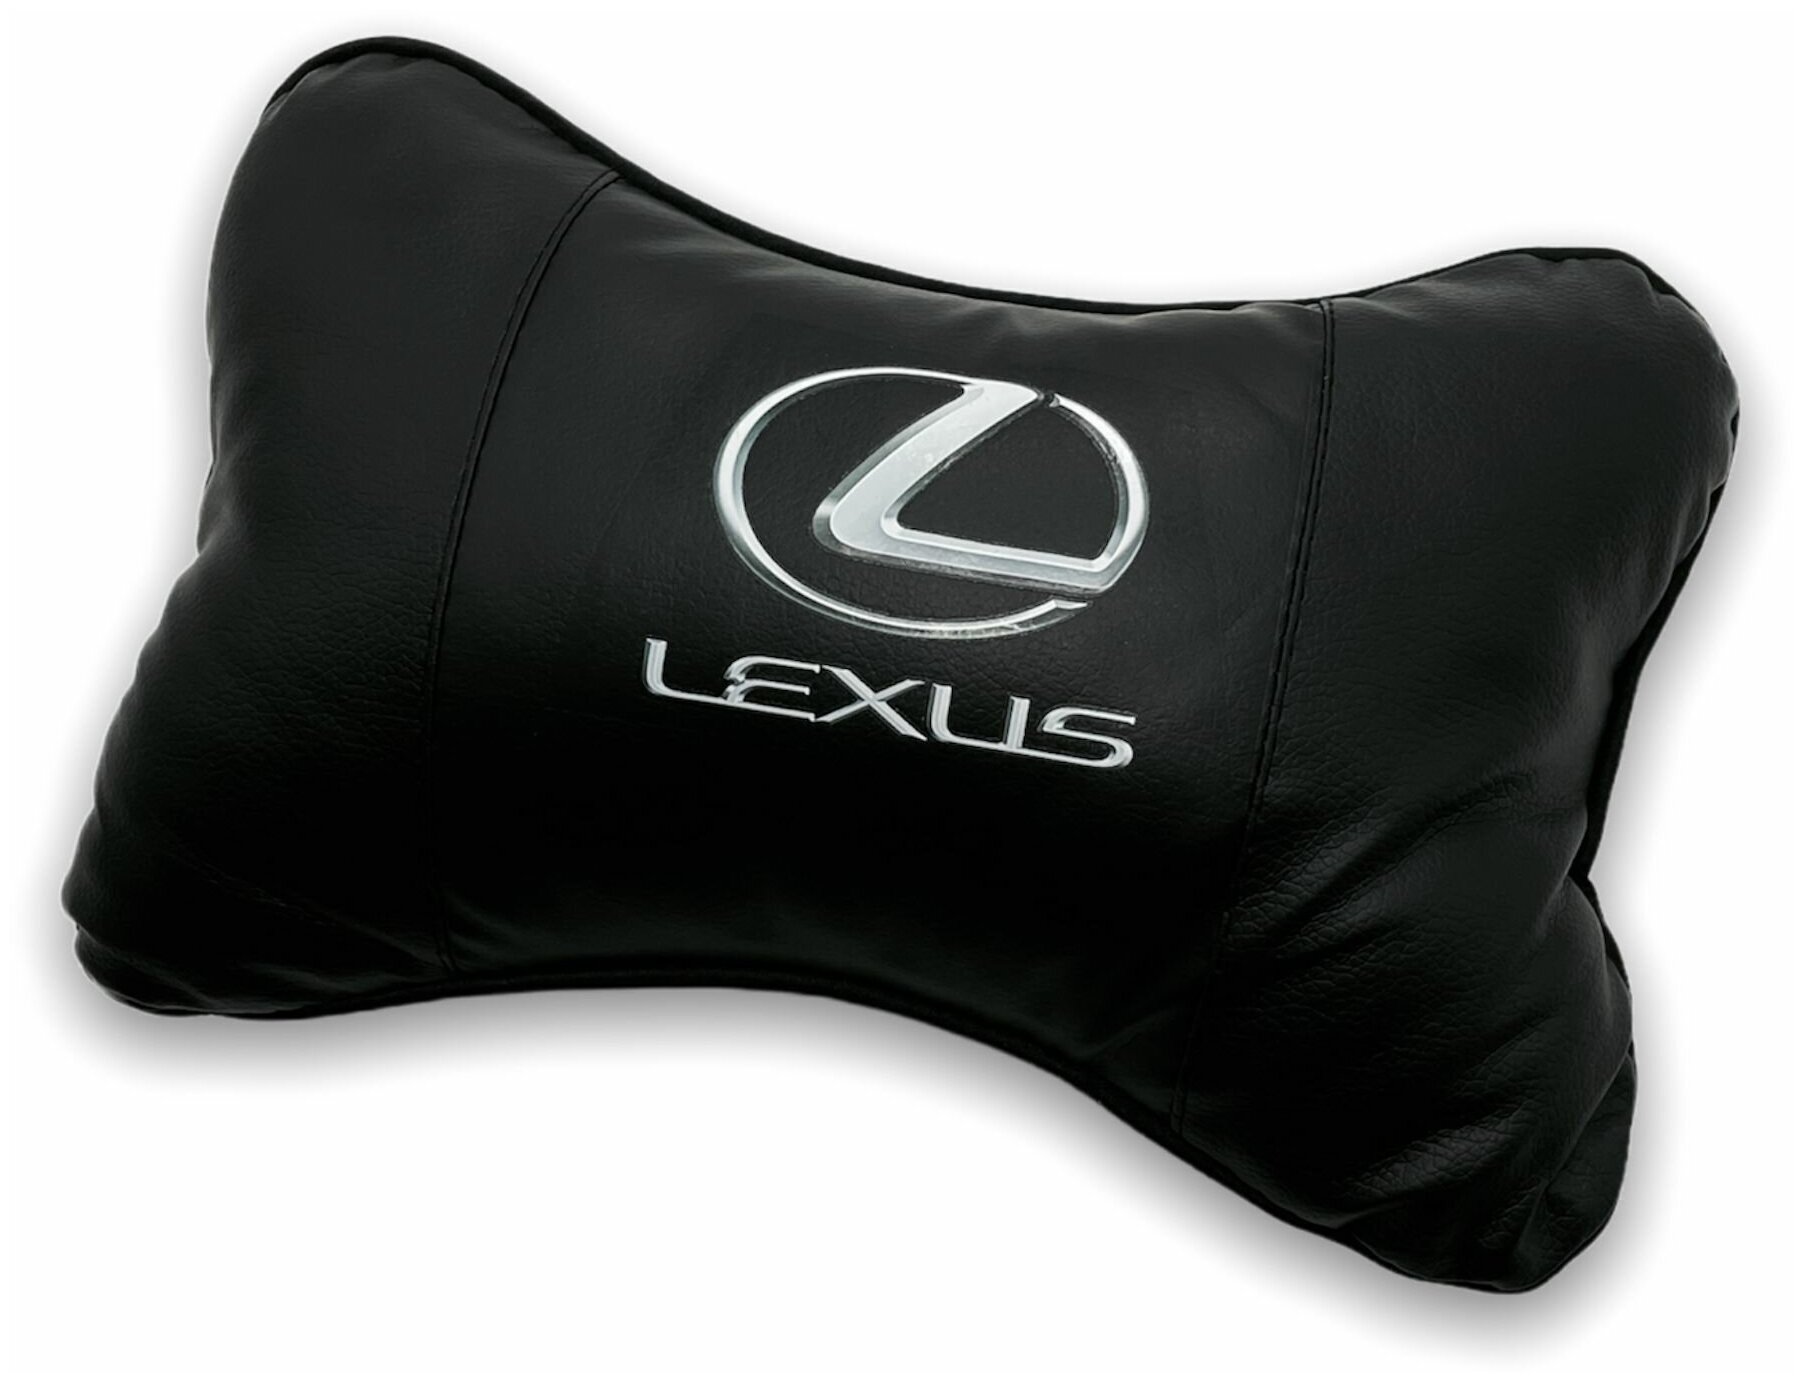 Автомобильная подушка для шеи на подголовник сиденья автоподушка косточка MejiCar с логотипом Lexus под черный салон